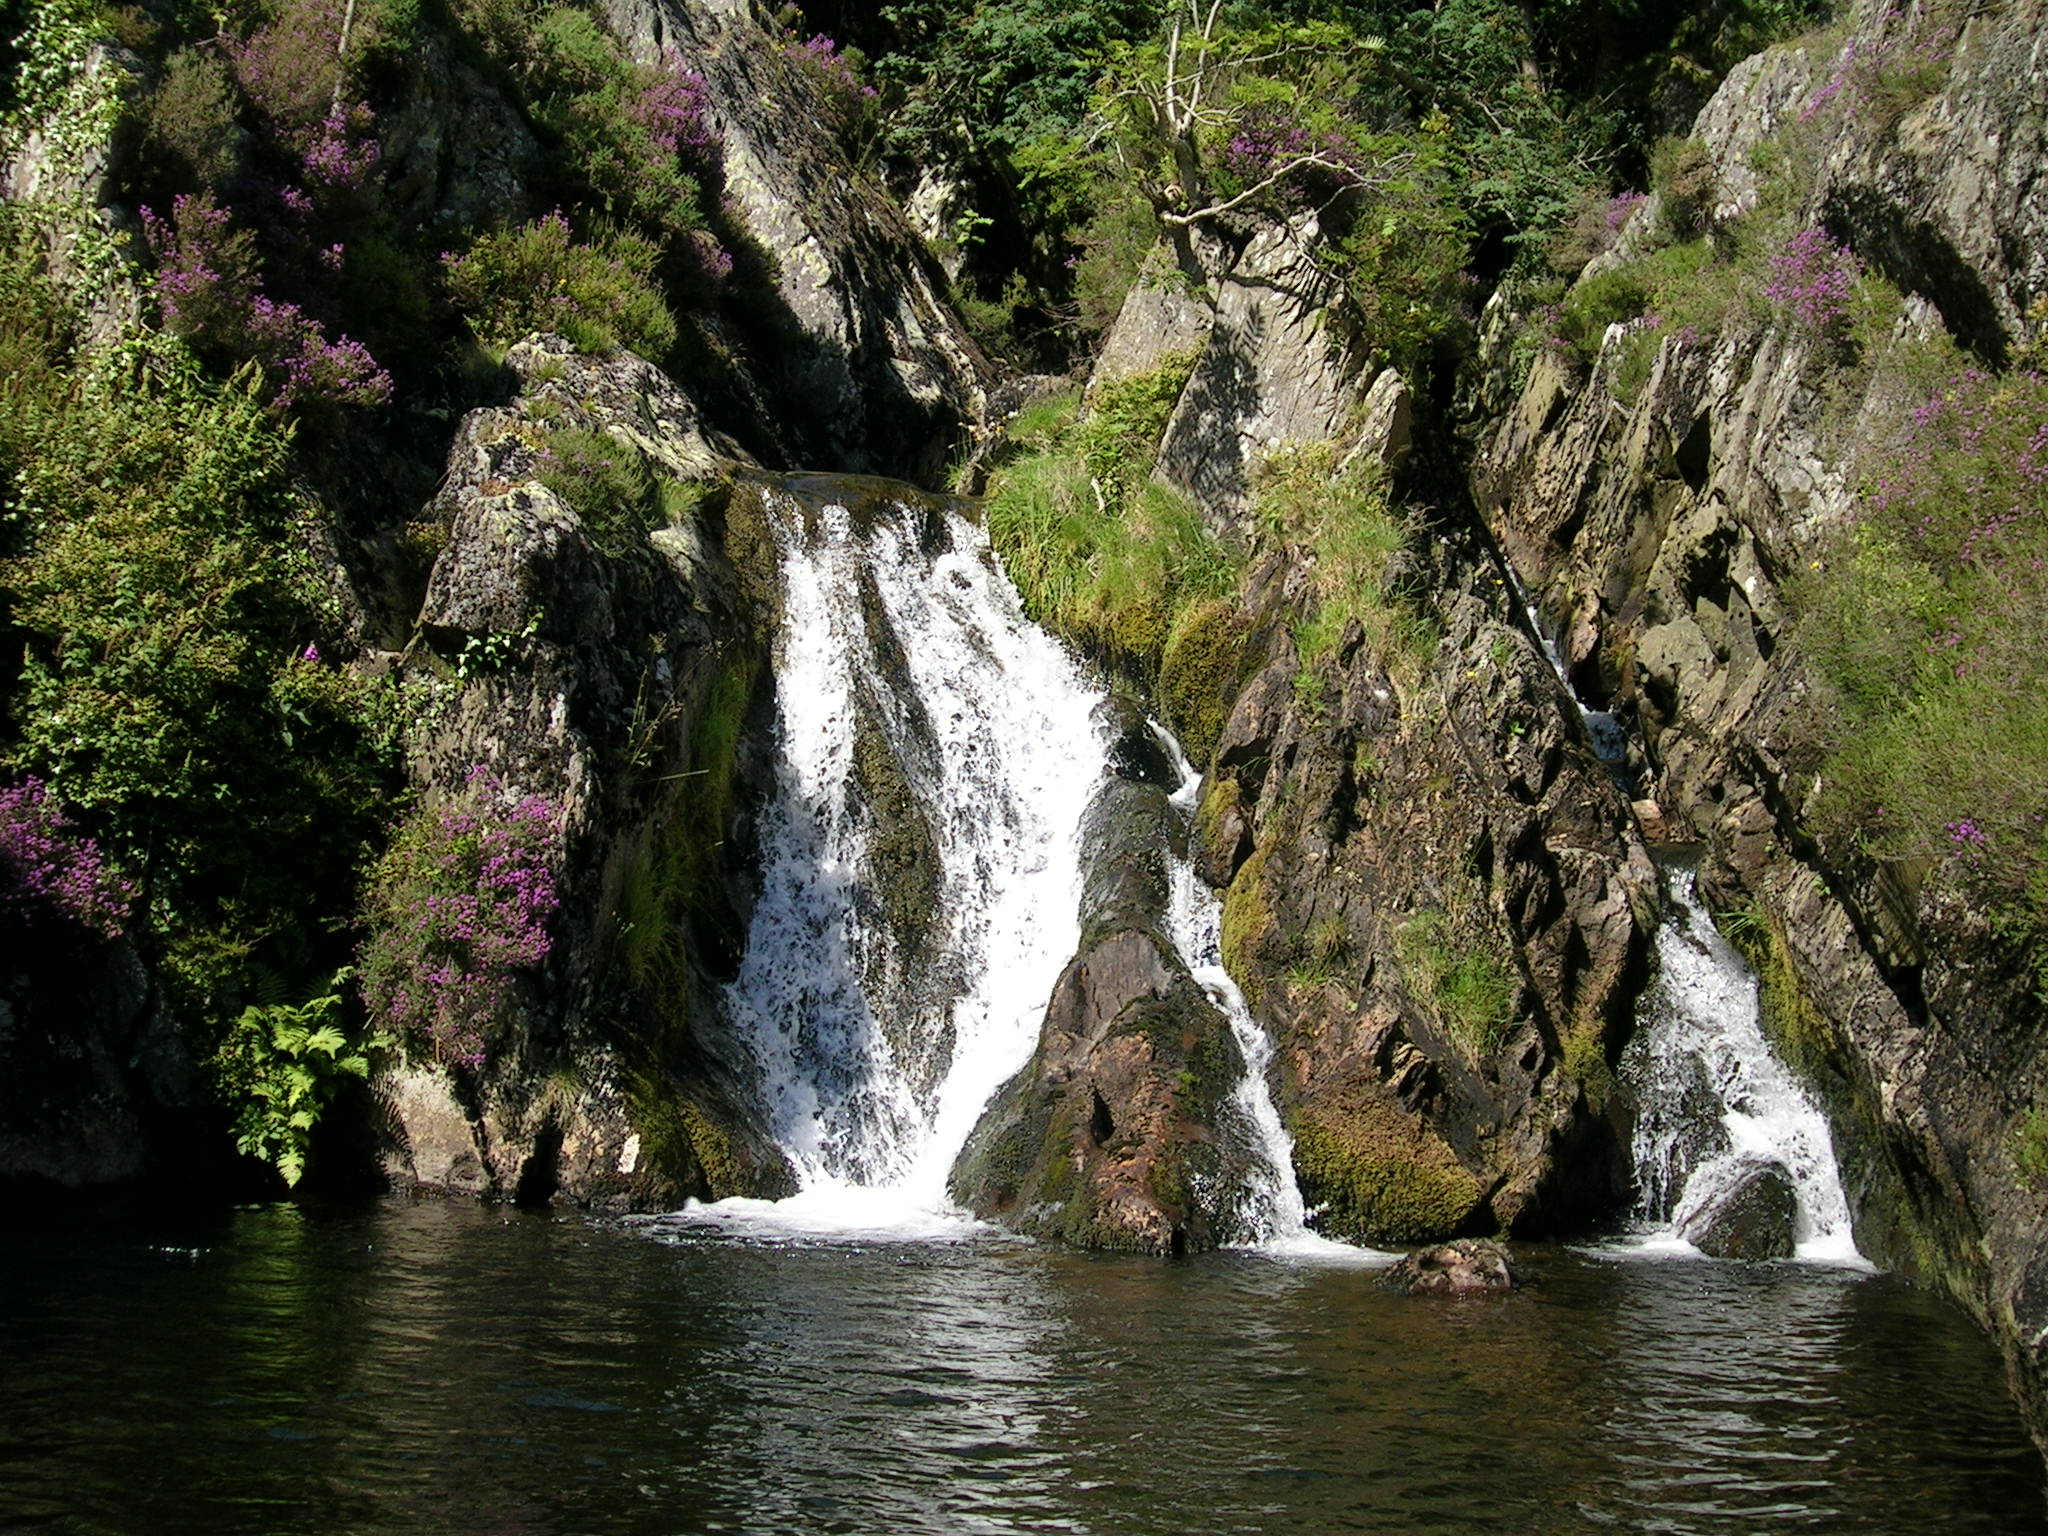 Swimming spot at a waterfall at Dinas Mawddy, Mid Wales